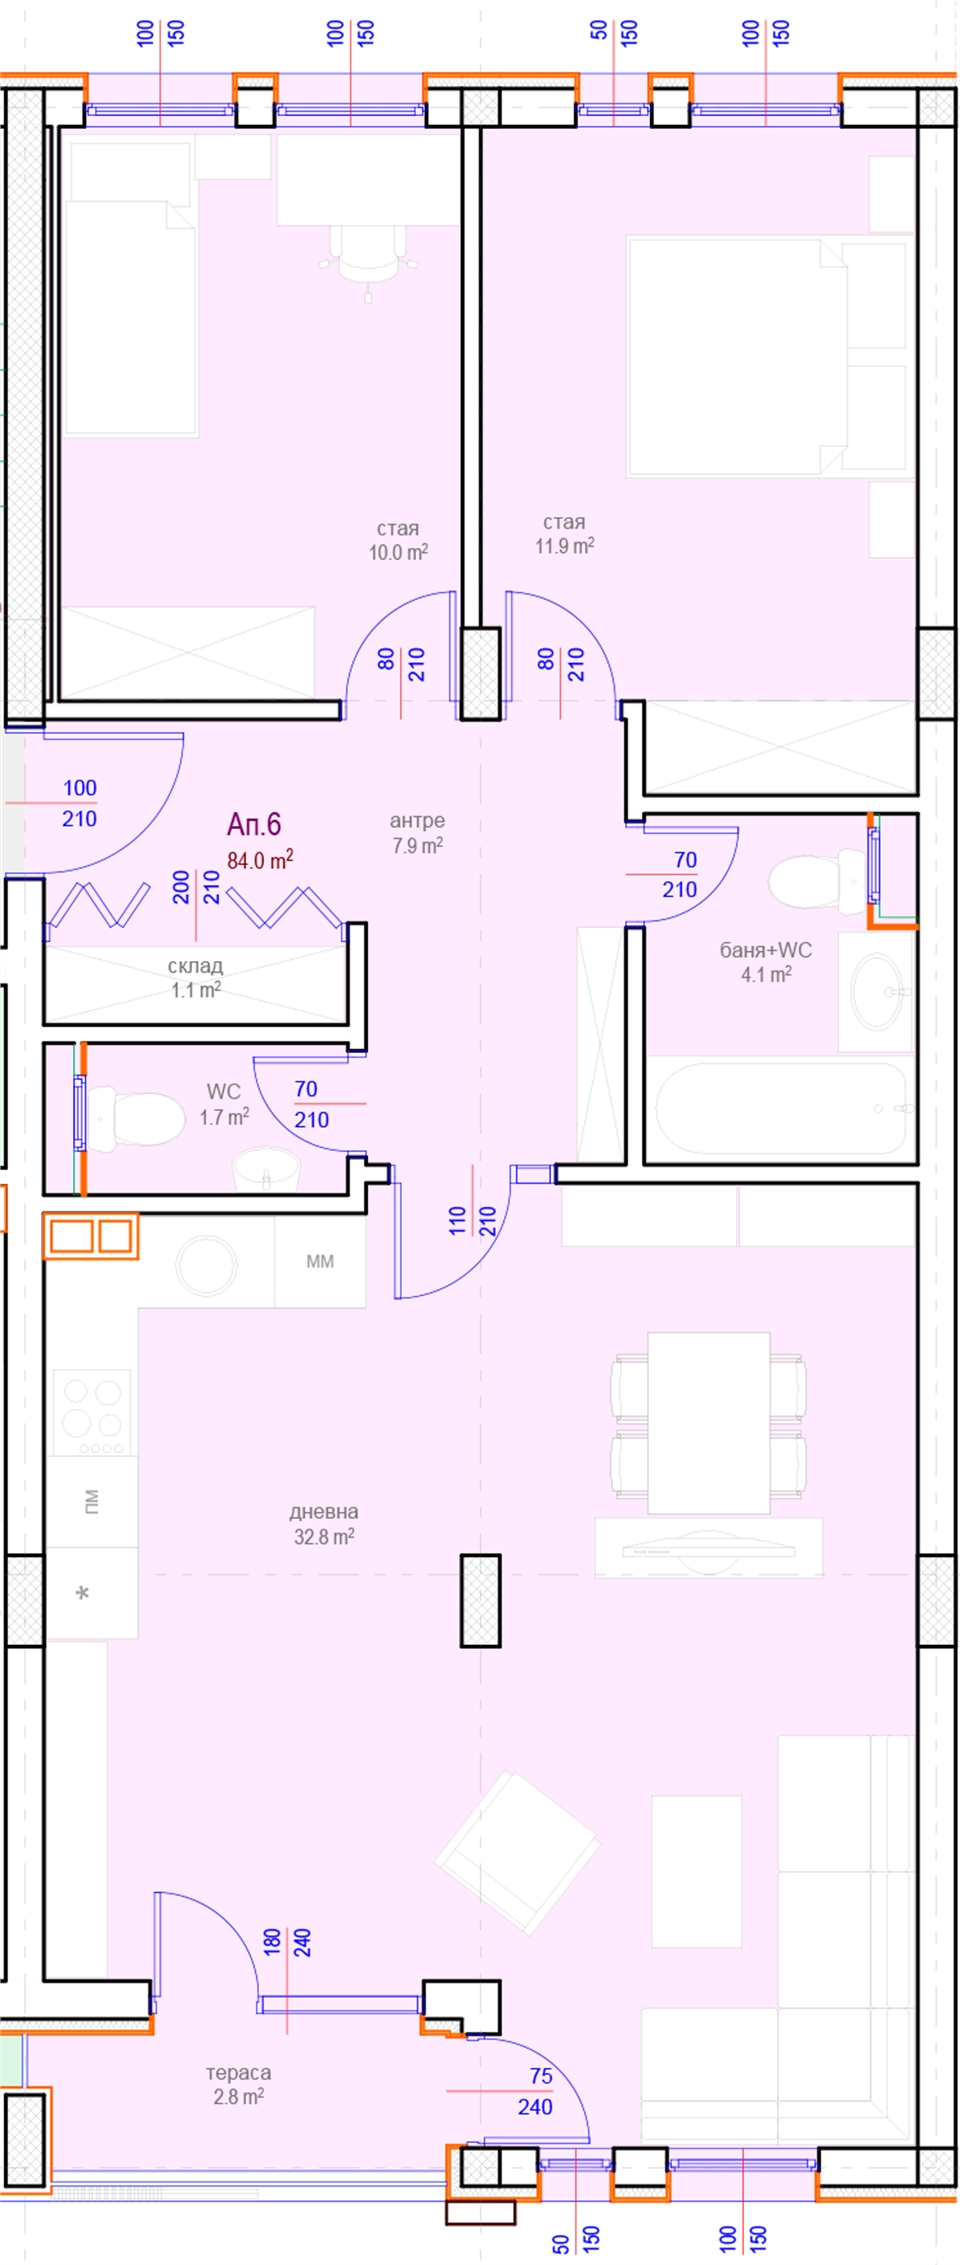 Апартамент № 6, Вход А, 2 етаж, Изложение С-Ю